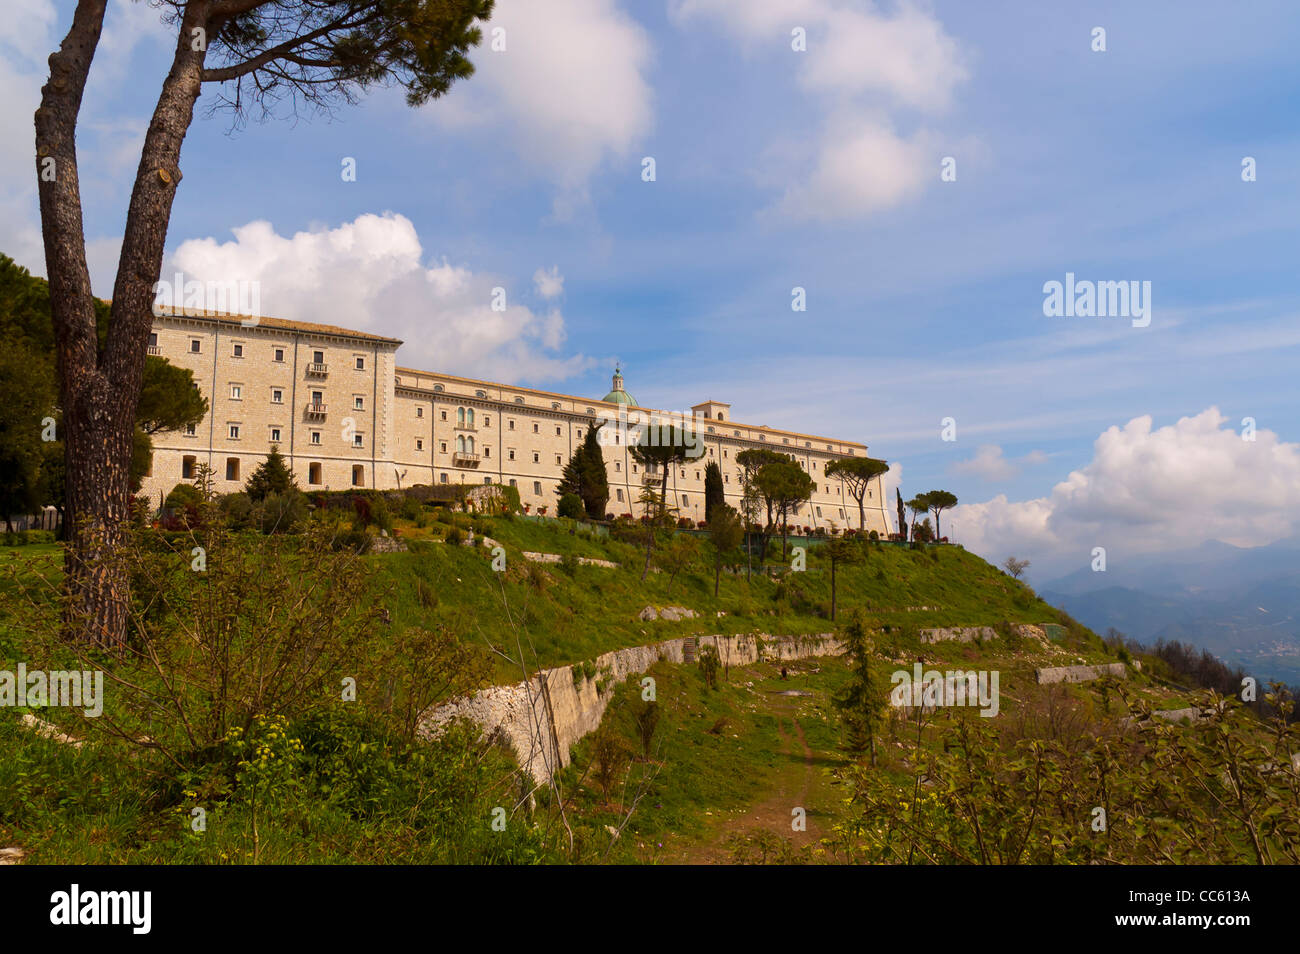 Monte Cassino monasterio está en la cima de una colina, cerca de Roma, en Italia. Foto de stock